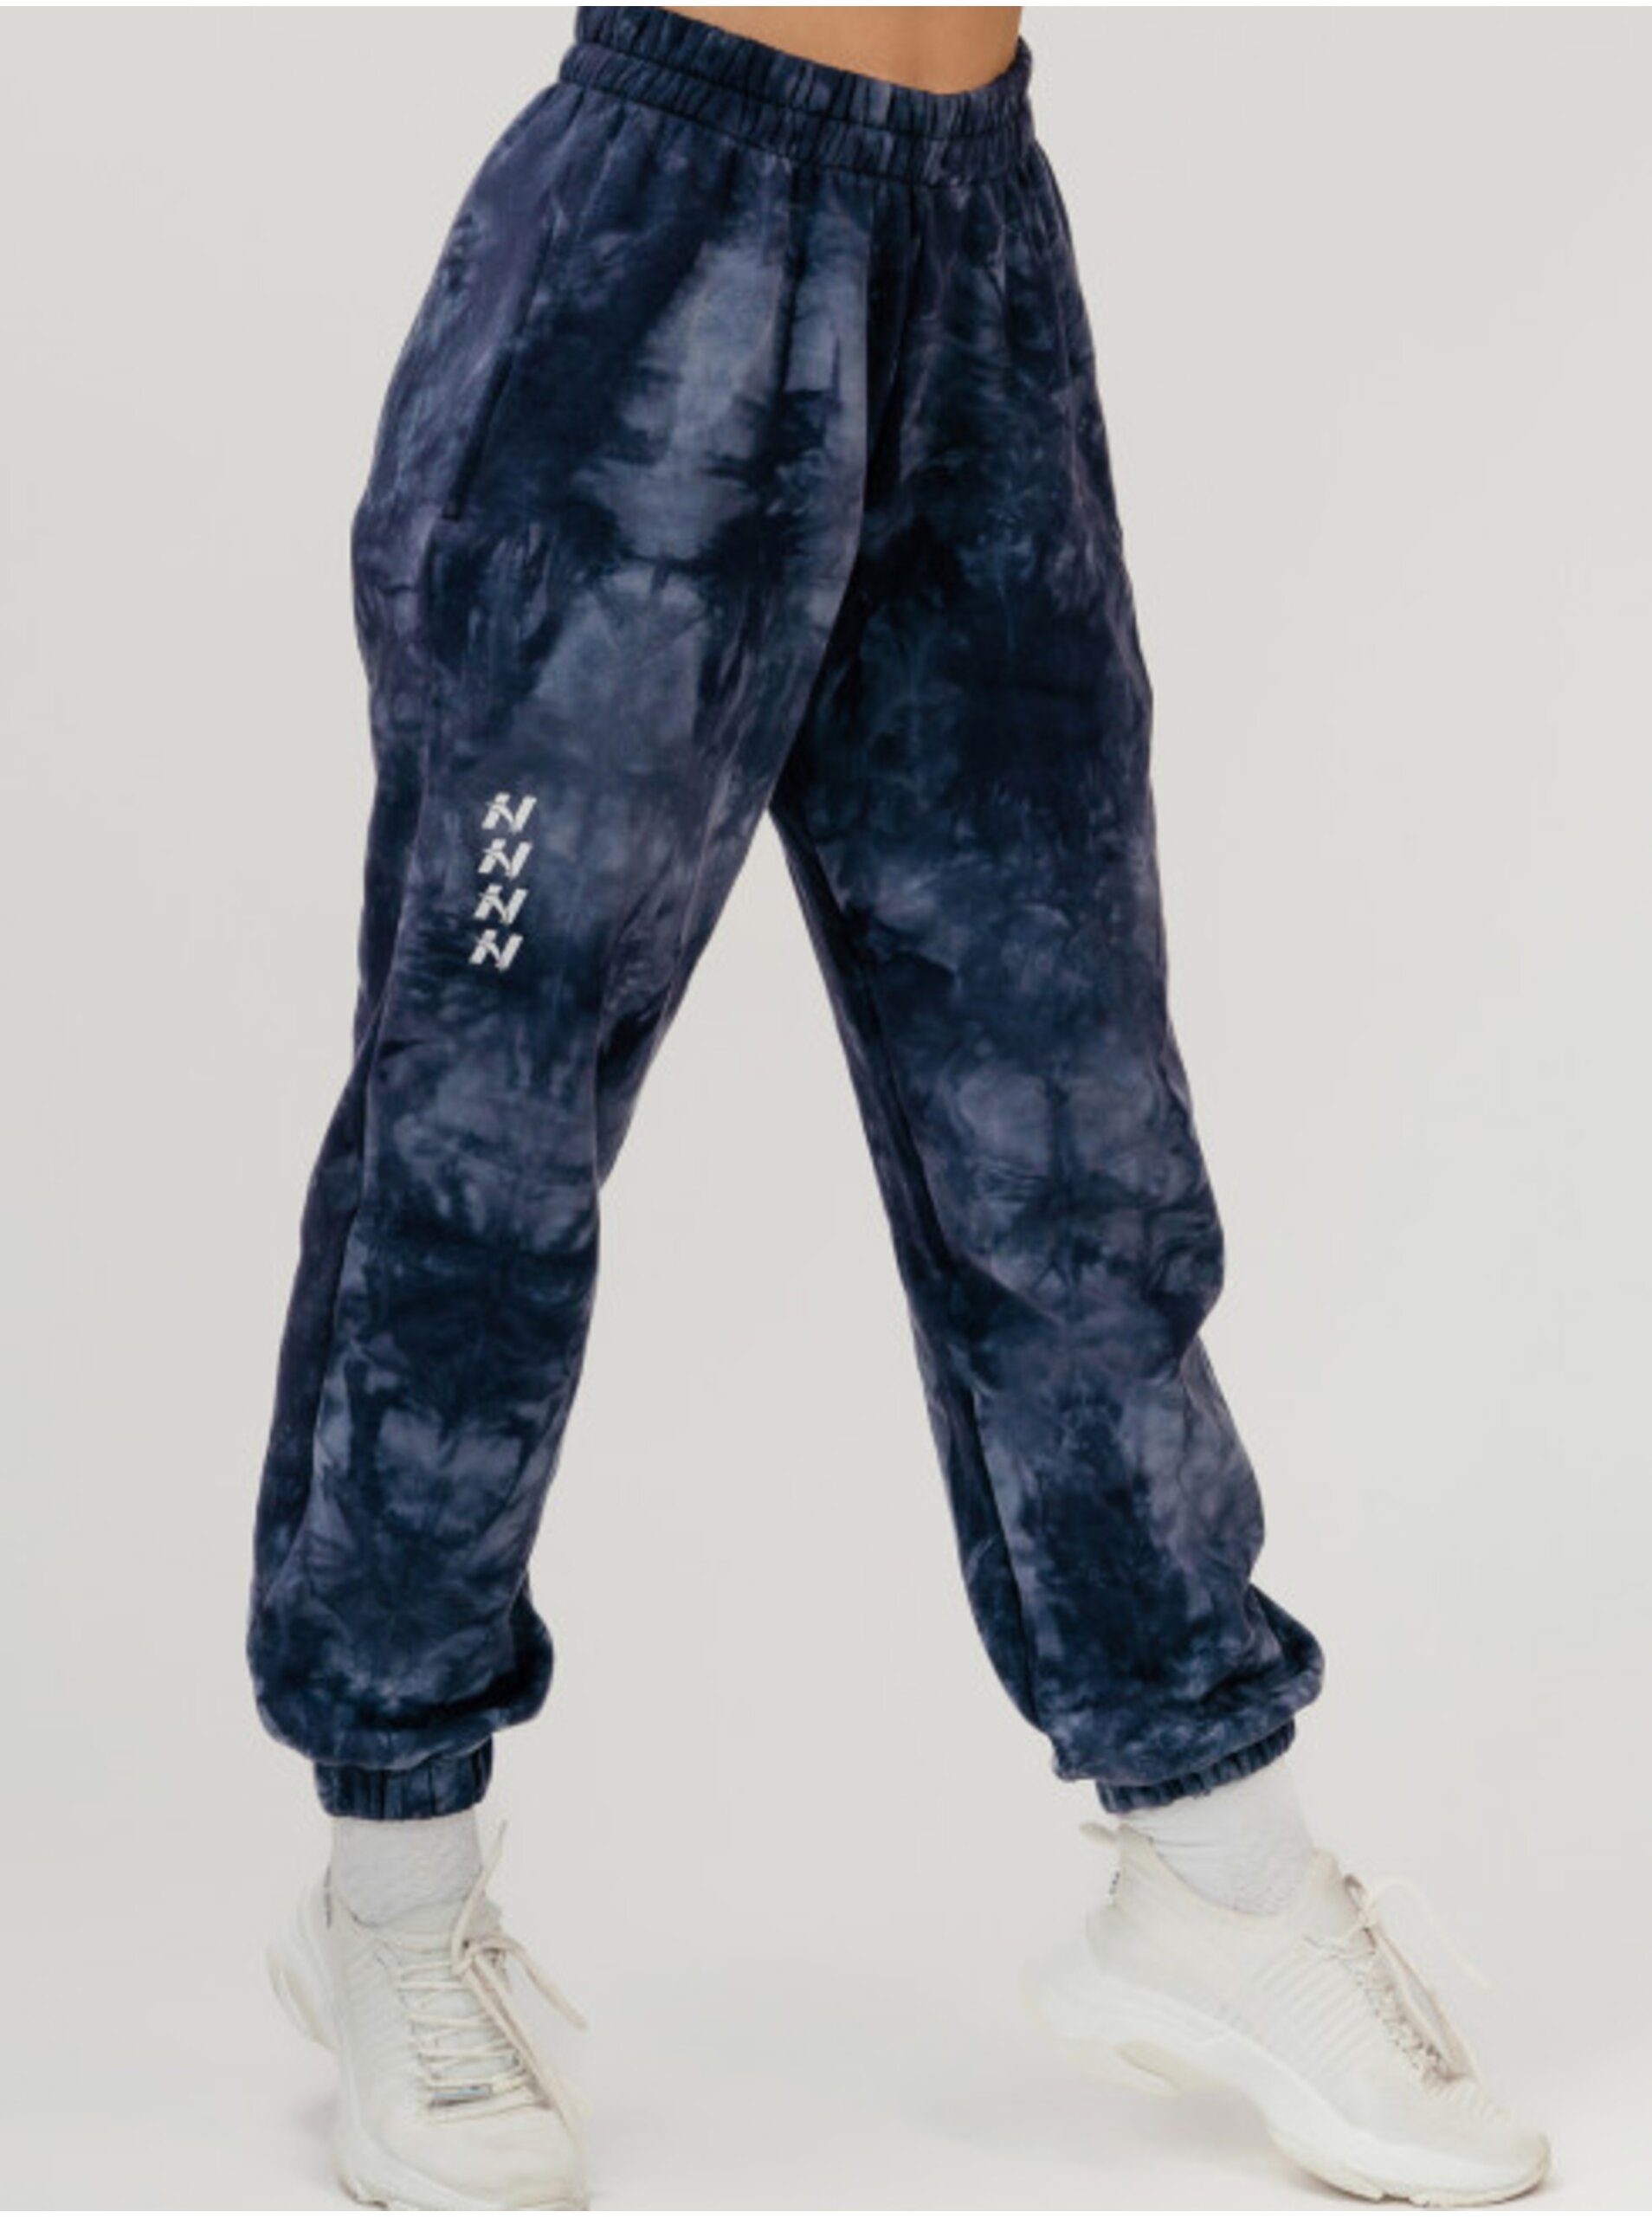 E-shop Tmavě modré dámské vzorované tepláky NEBBIA Re-fresh Women’s Sweatpants